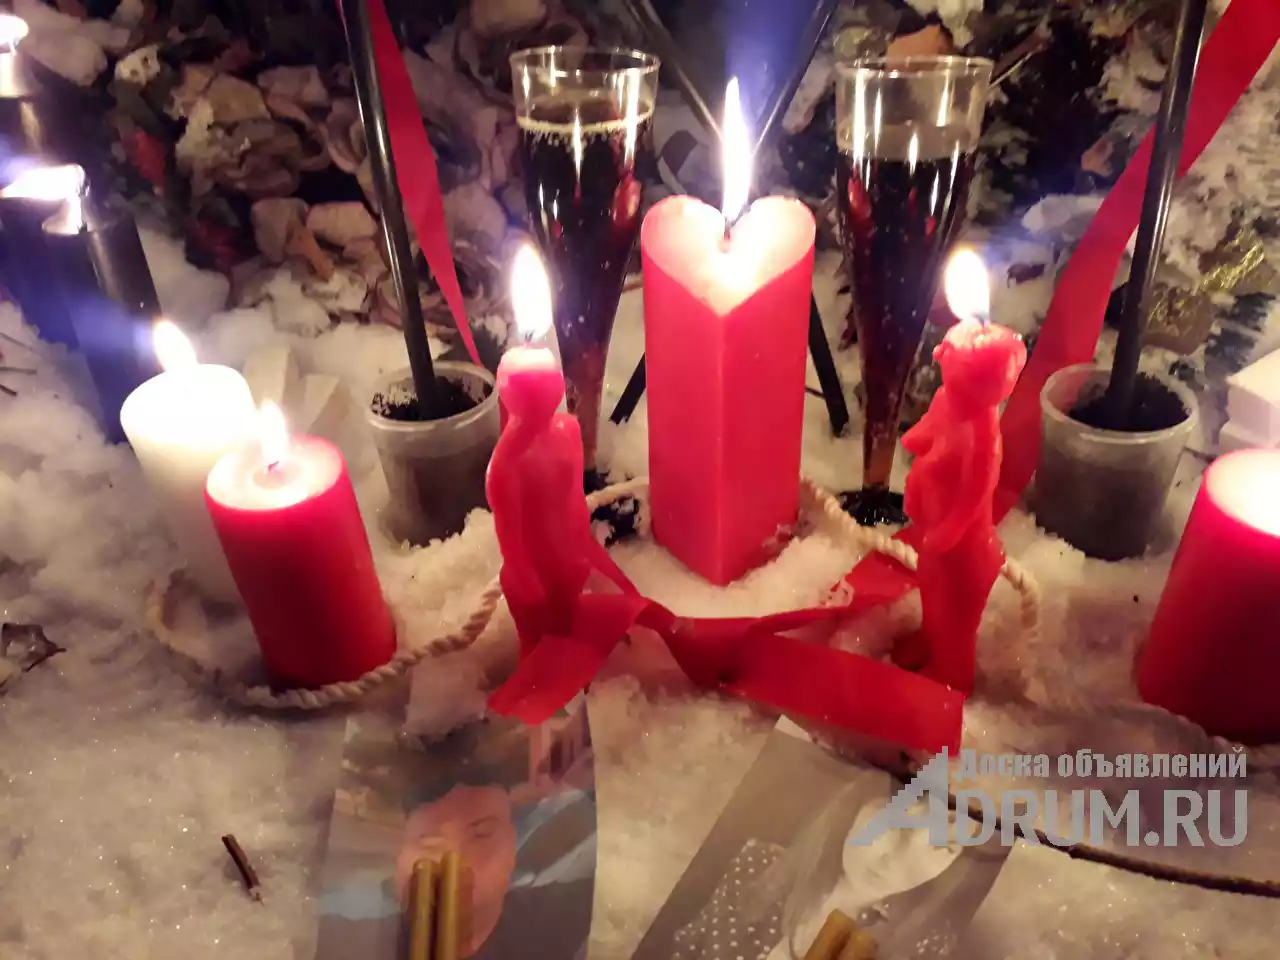 Сексуальная привязка егельет Видео присутствие на ритуале в Липецке